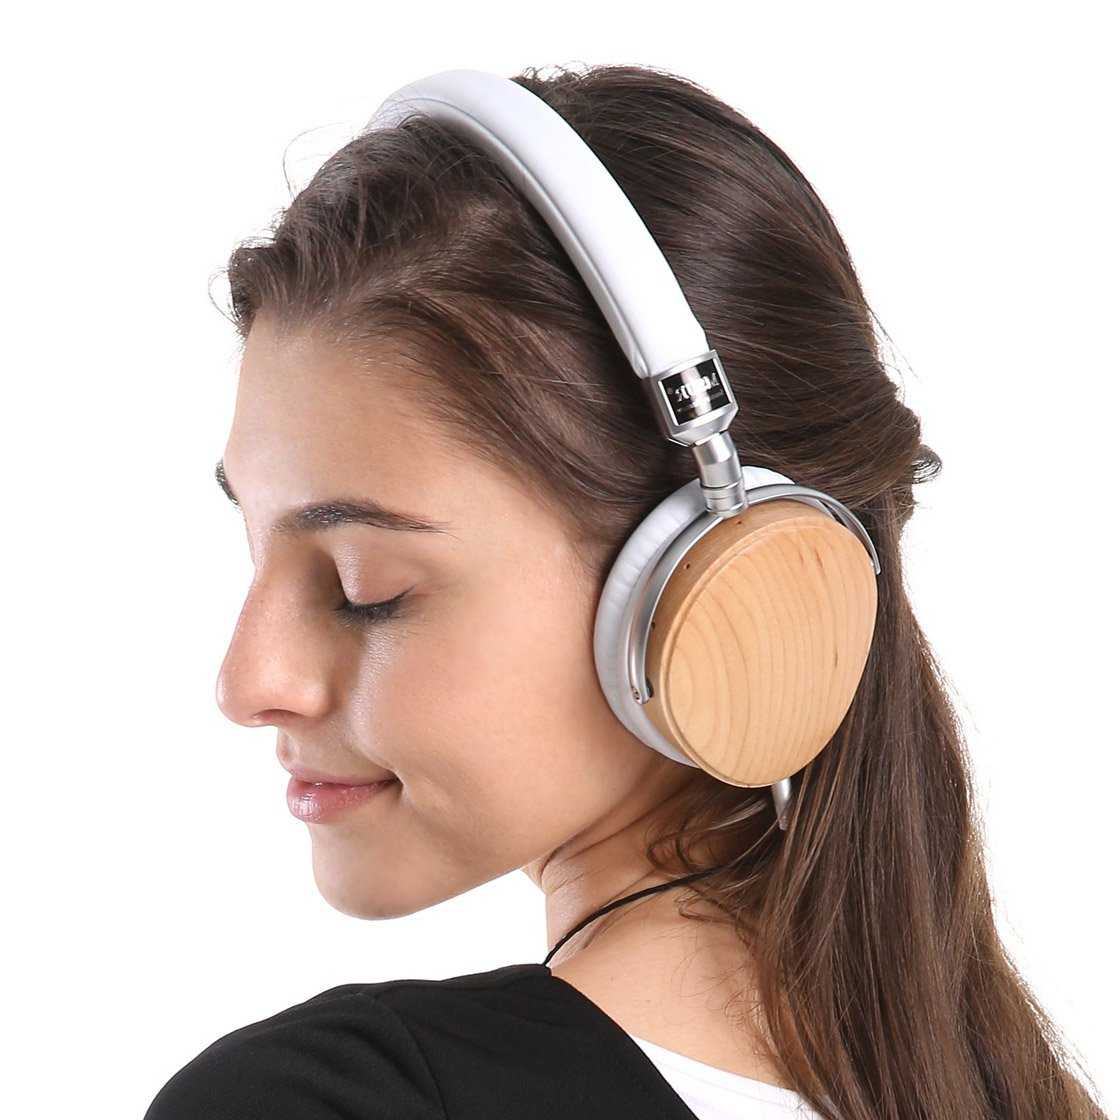 MSUR N350 On-Ear Headphone - DestinYAudio